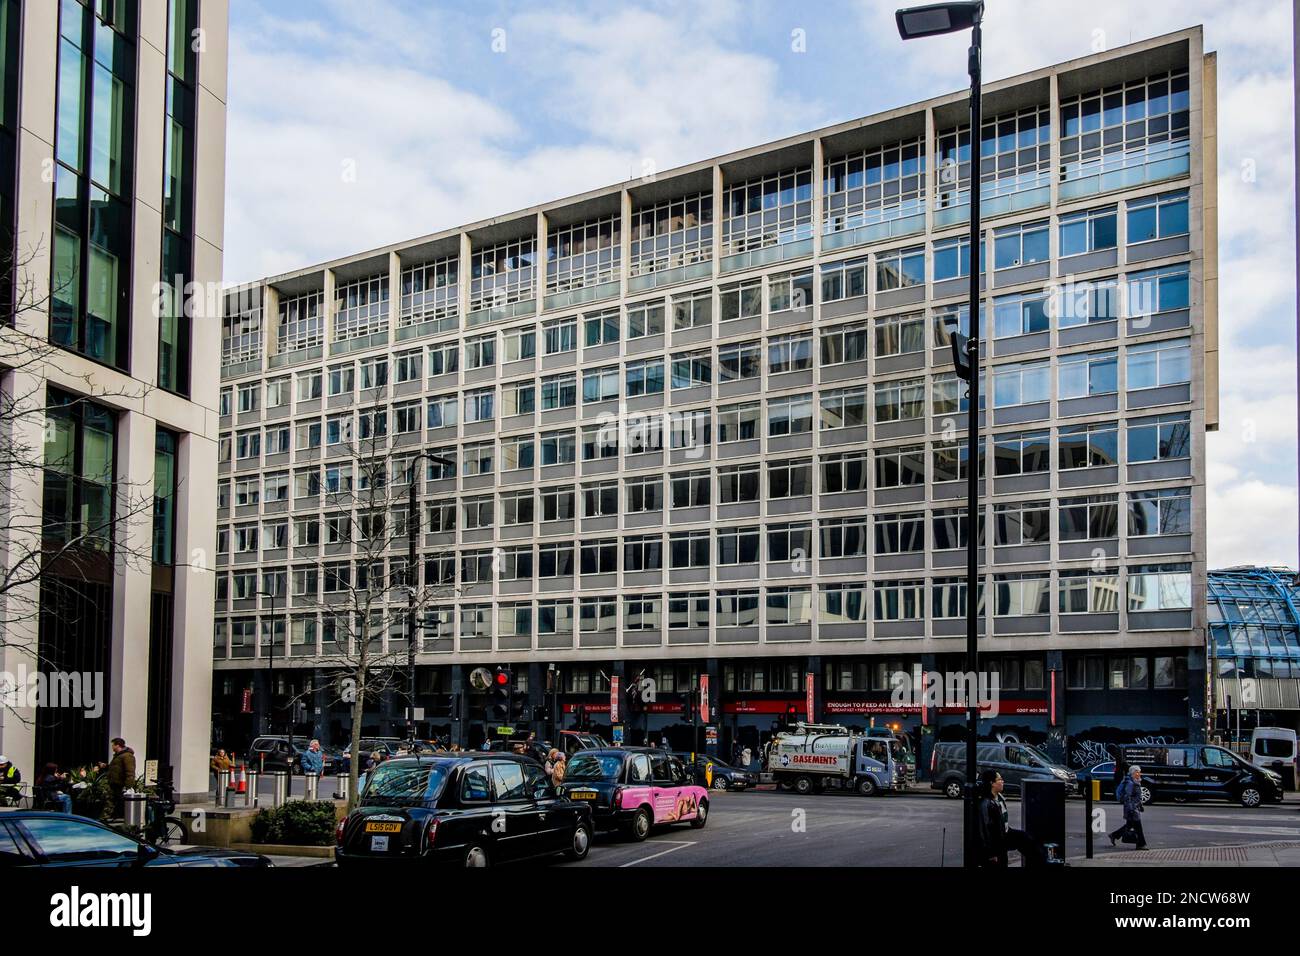 Elizabeth House, un immeuble de bureaux de 1960s, situé sur le chemin York, adjacent à la station de Waterloo, dont la démolition et le réaménagement du site sont prévus. Londres. ROYAUME-UNI Banque D'Images